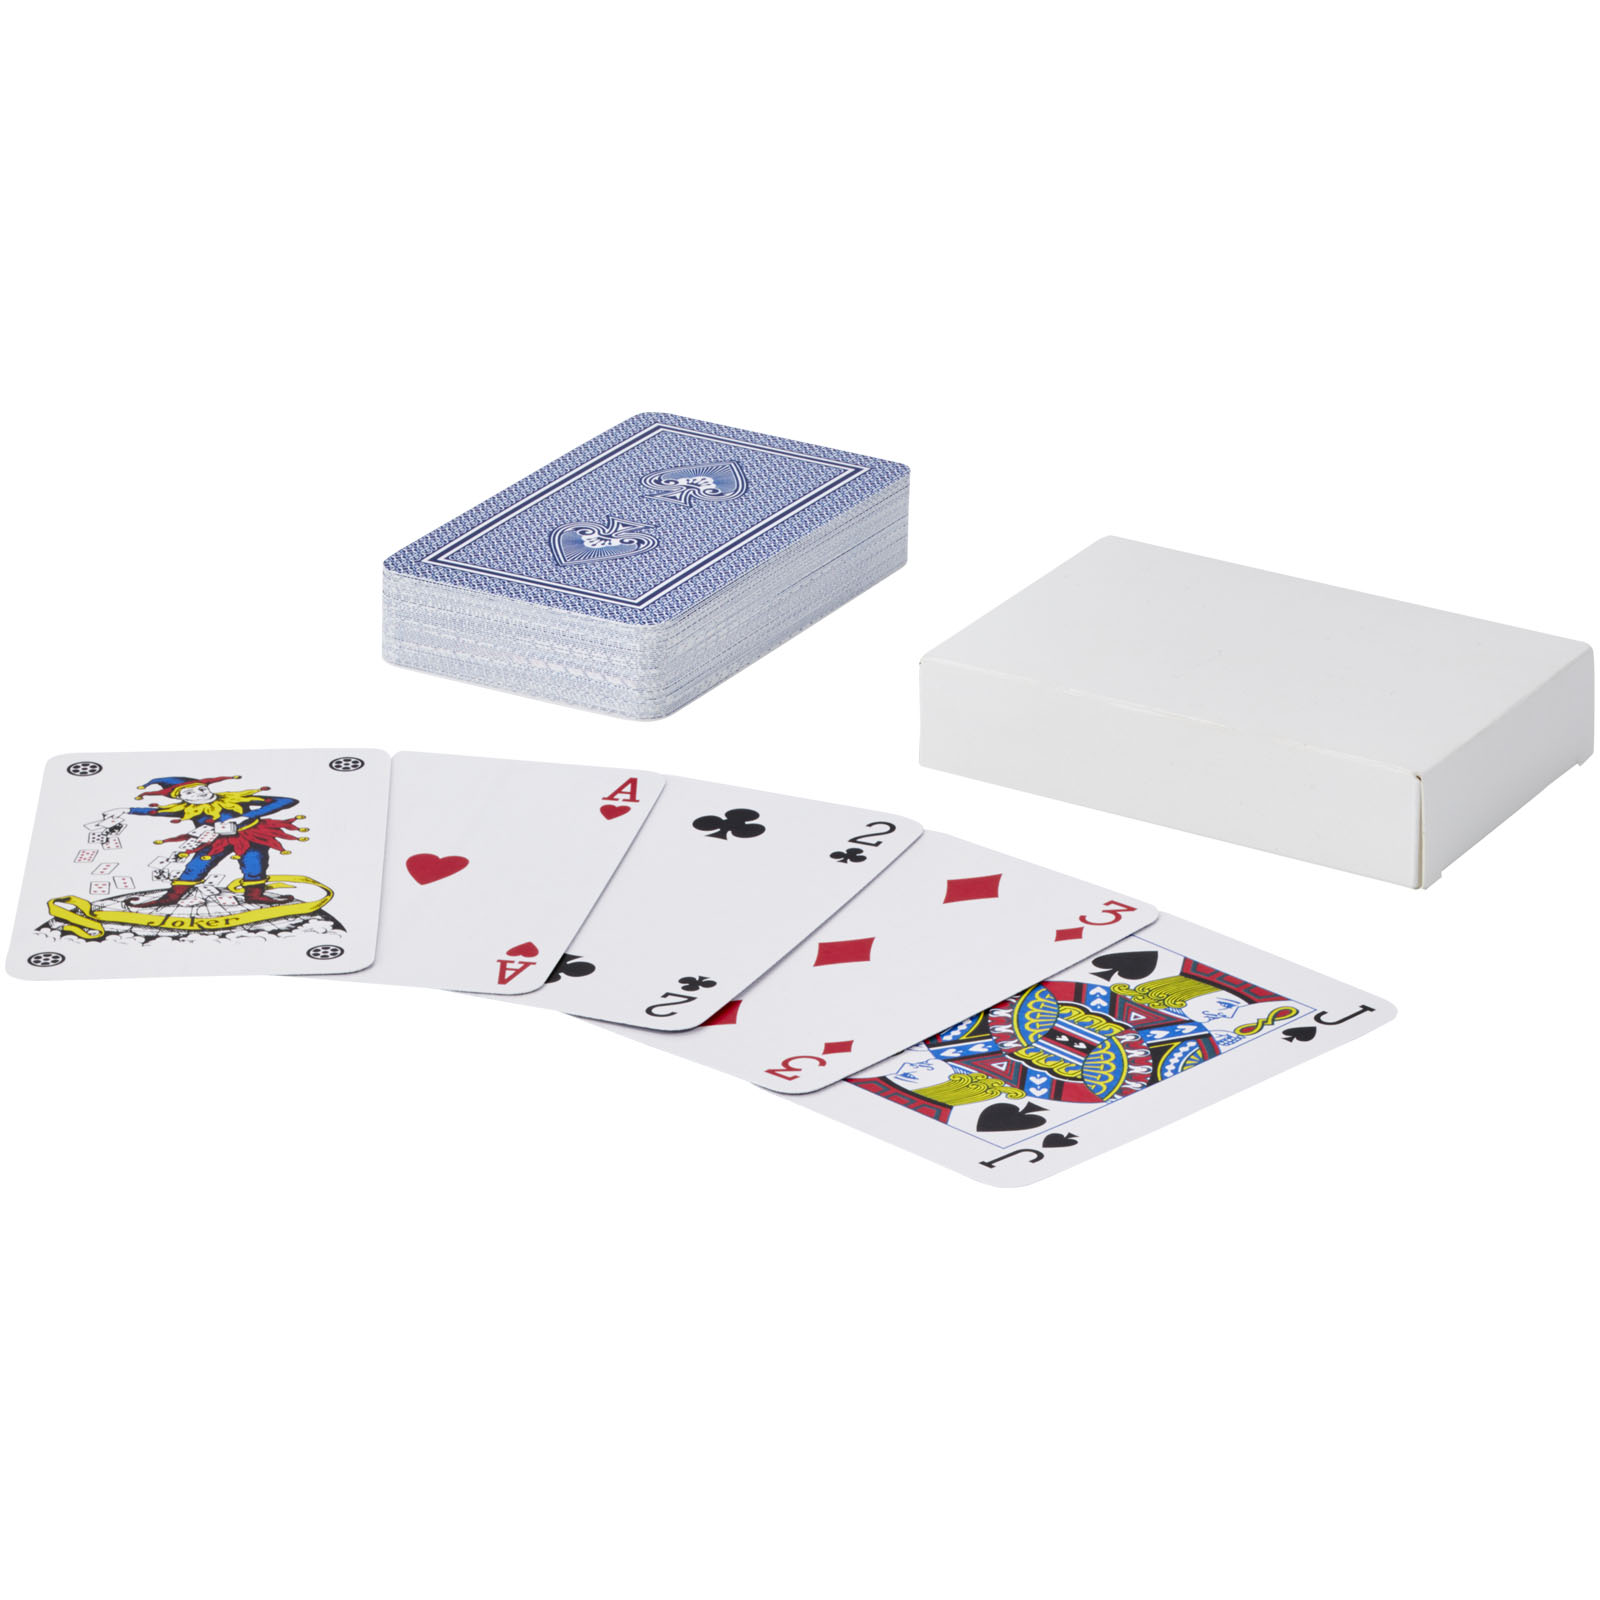 Jeux d'intérieur - Ensemble de cartes à jouer Ace